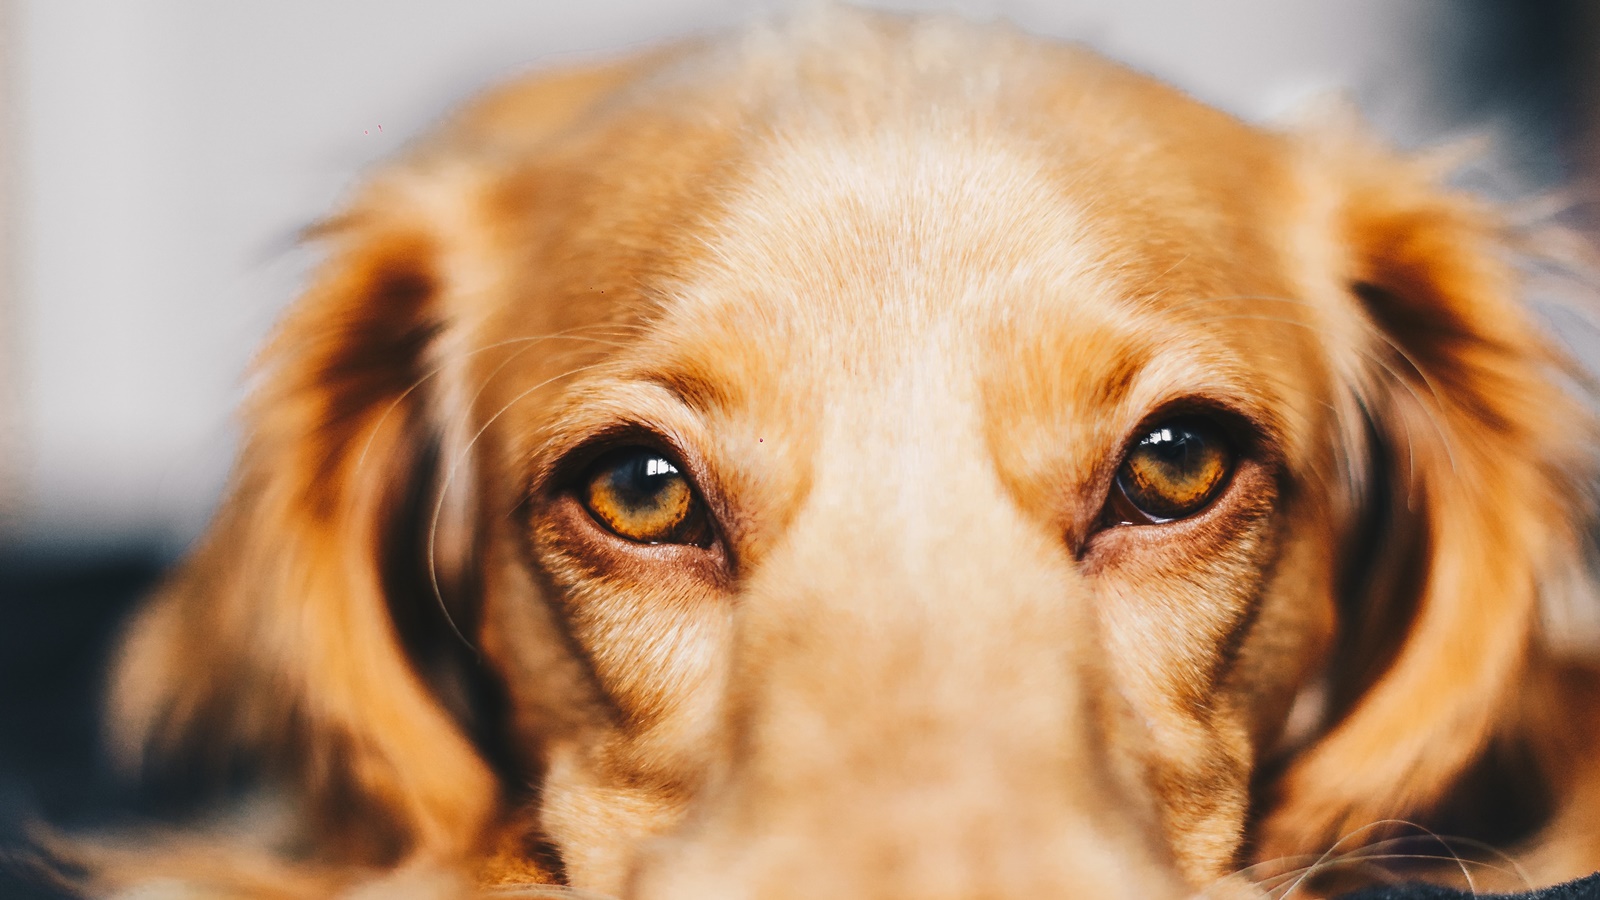 Έσερνε τον σκύλο – Πάτρα: Βαρύ πρόστιμο σε άνδρα για κακοποίηση ζώου